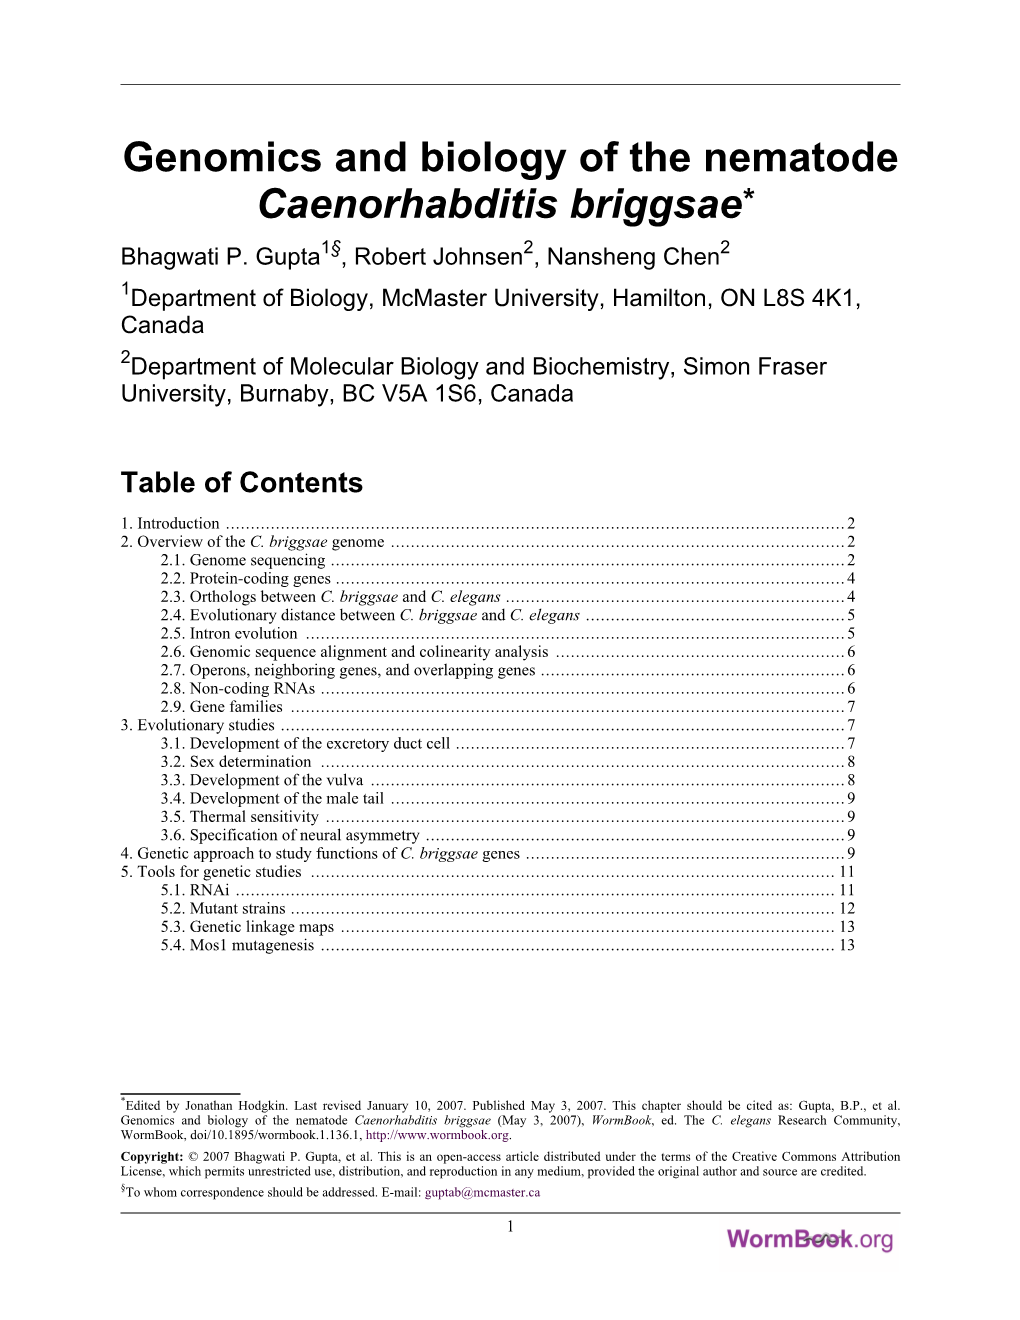 Genomics and Biology of the Nematode Caenorhabditis Briggsae* Bhagwati P